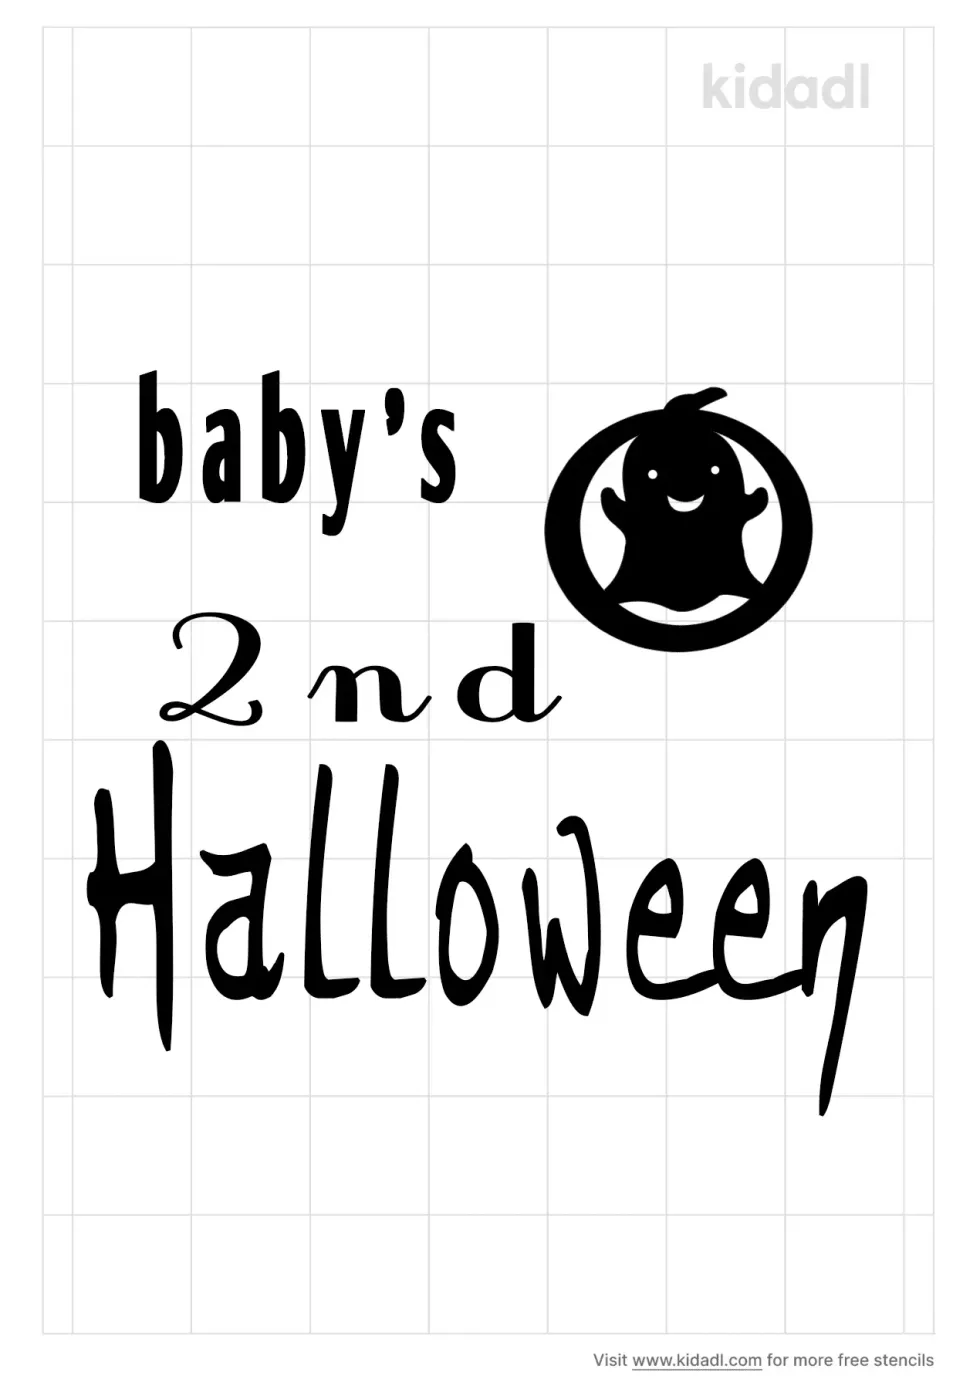 Baby's Second Halloween